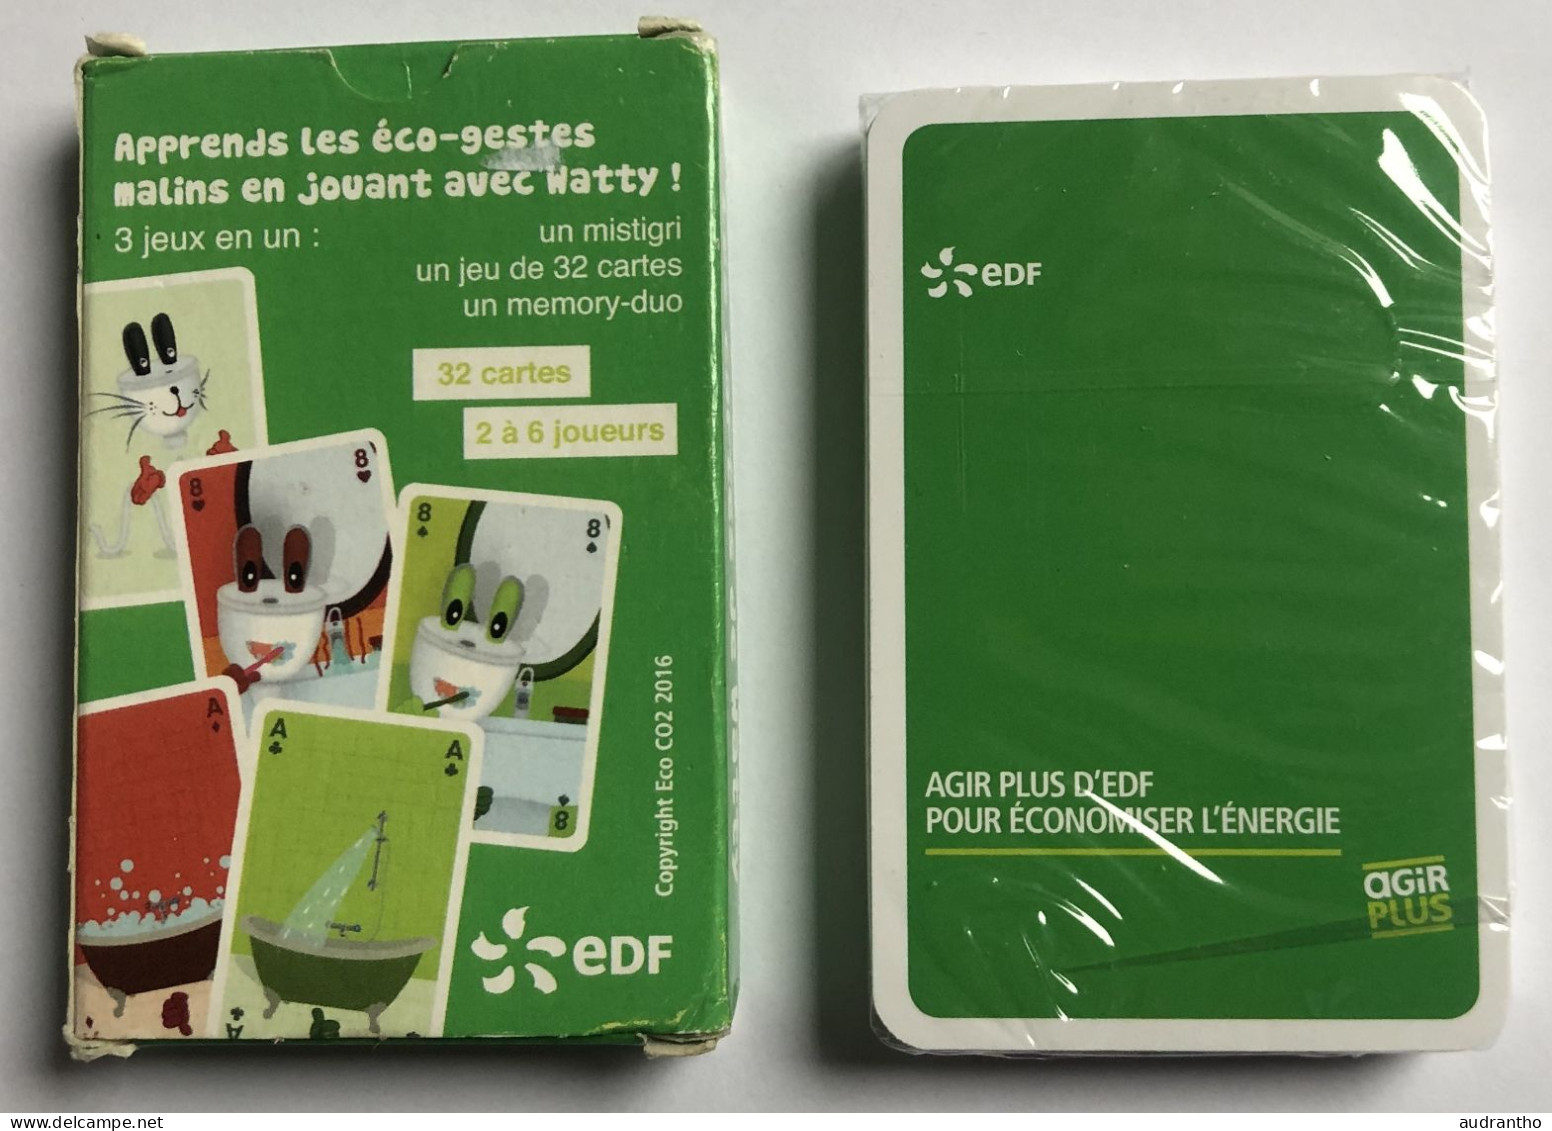 Jeu De 32 Cartes Publicitaire Rare EDF 2016 Les Cartes De Watty - Mistigri Et Memory-duo - Les éco-gestes - 32 Carte